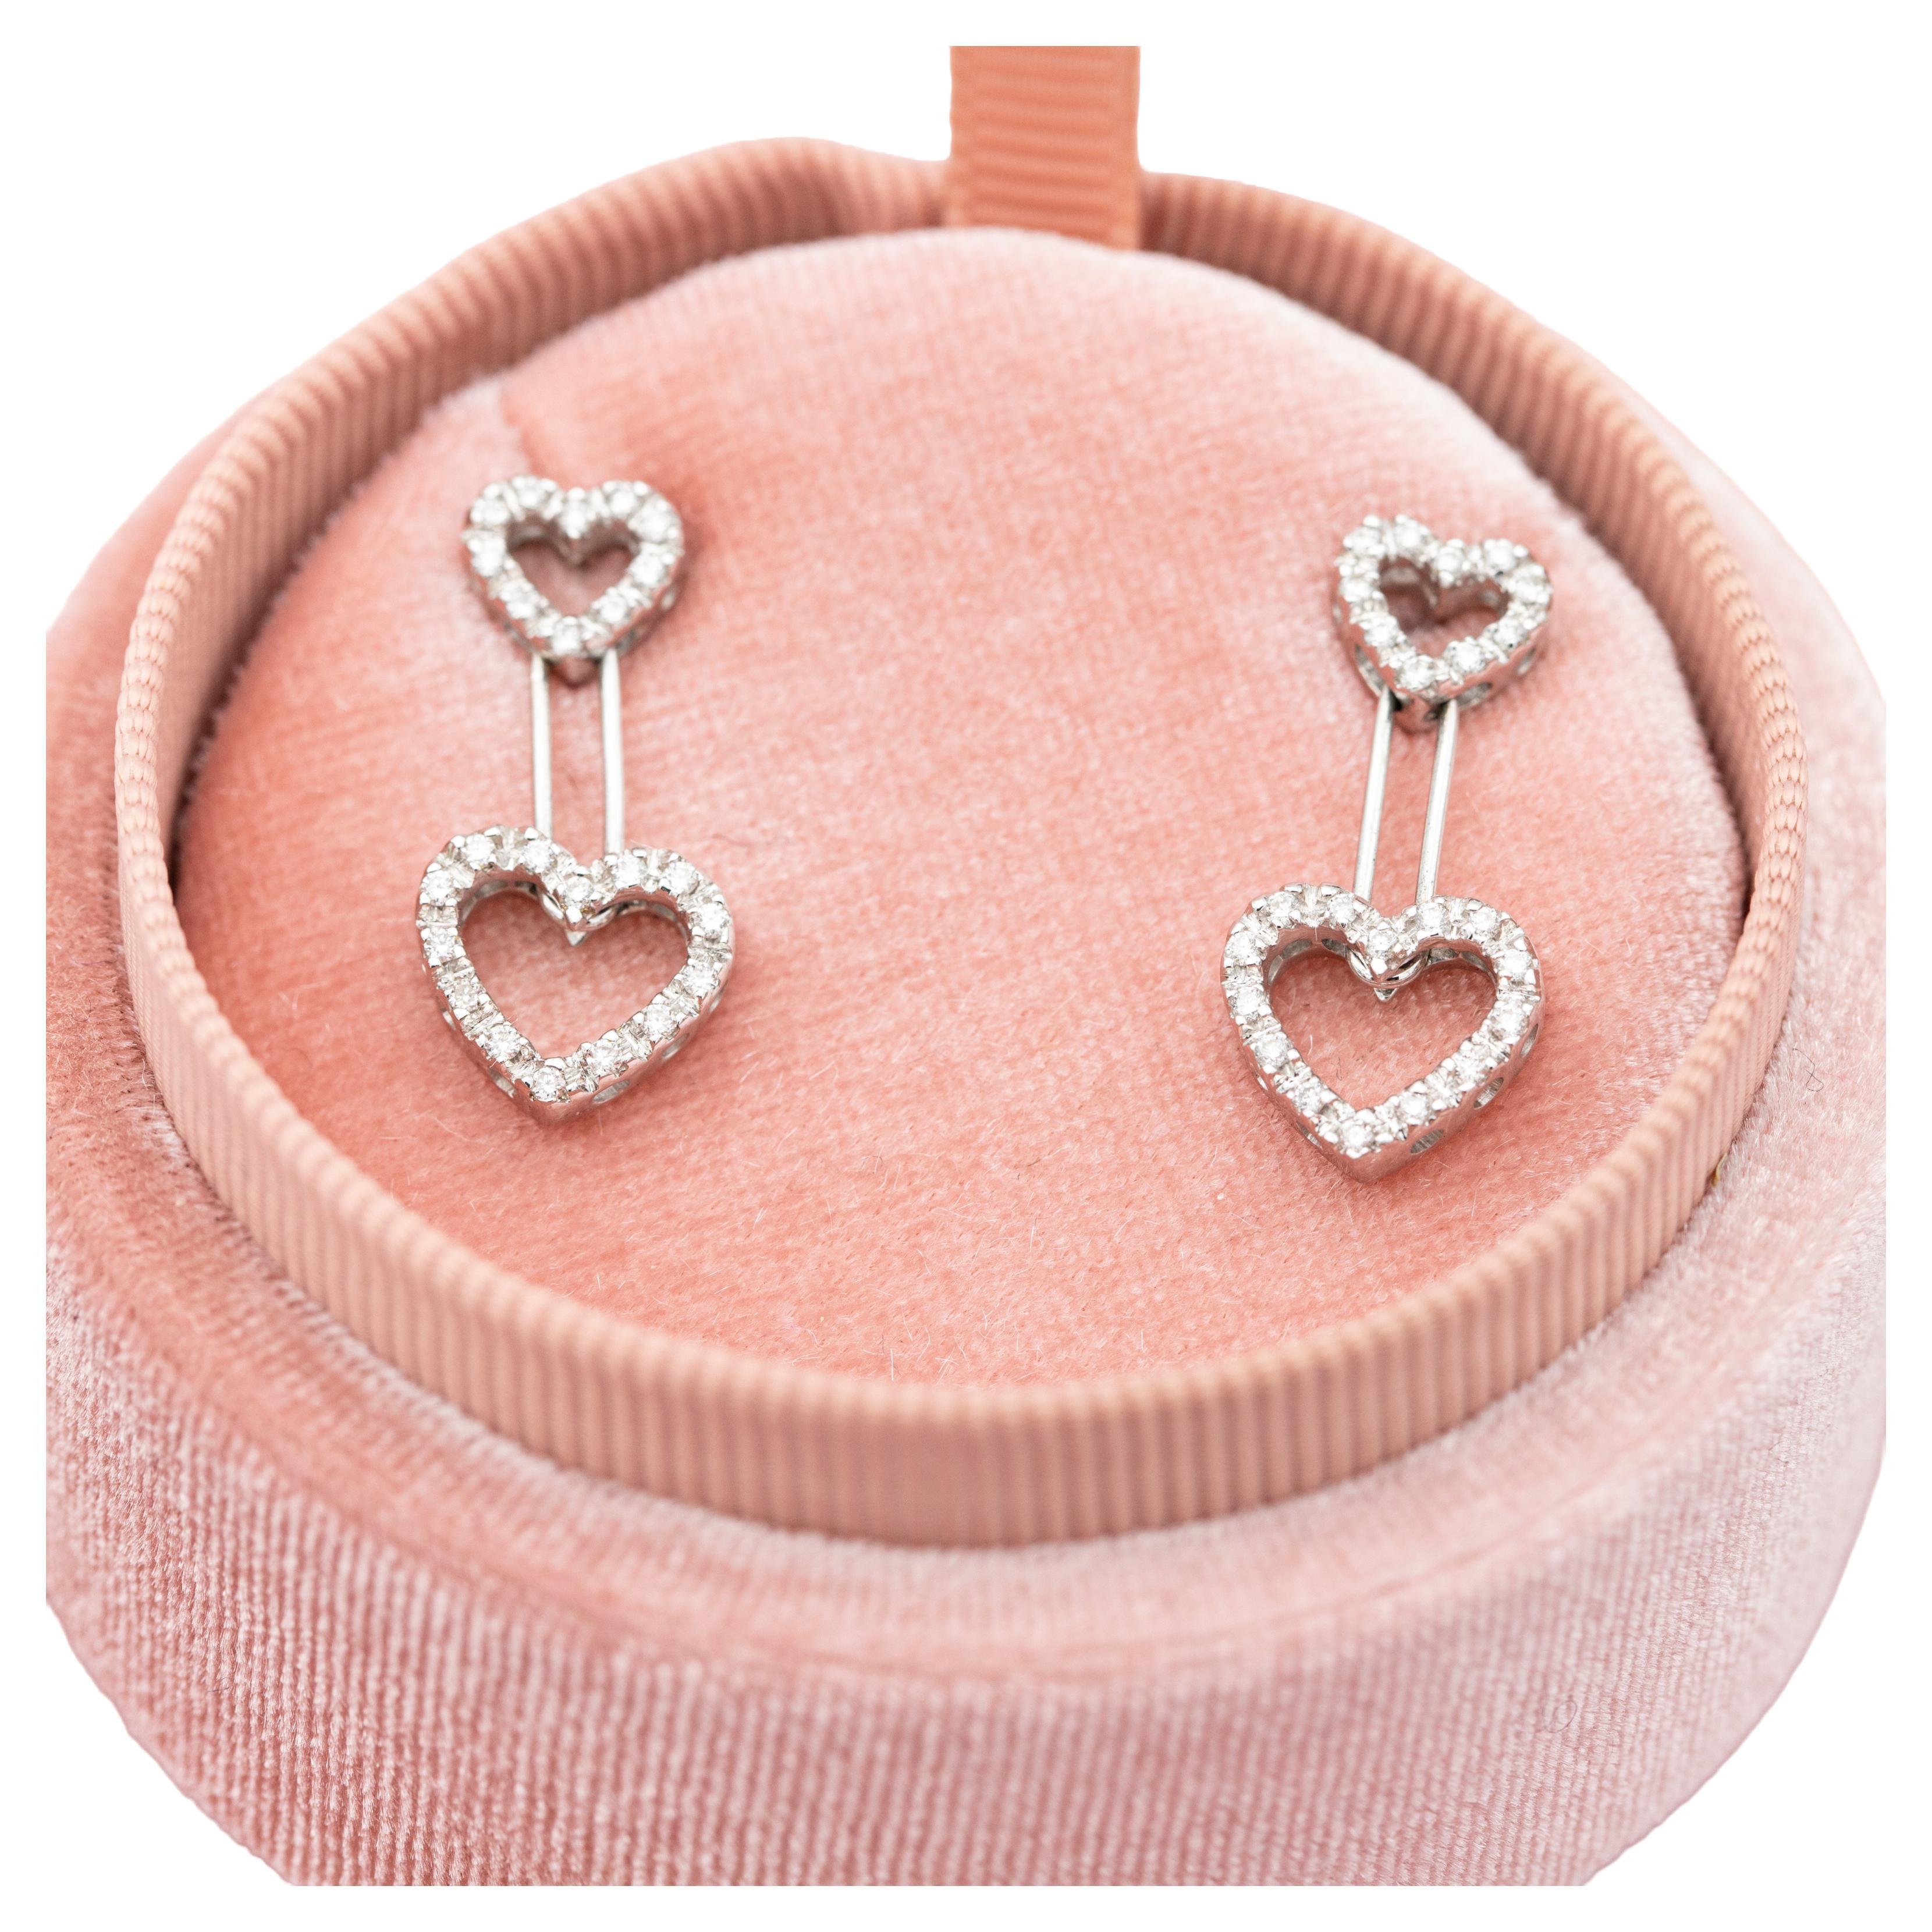 Boucles d'oreilles cœur en or blanc 18 carats - clous d'oreilles pivotants en diamants - cadeau romantique 